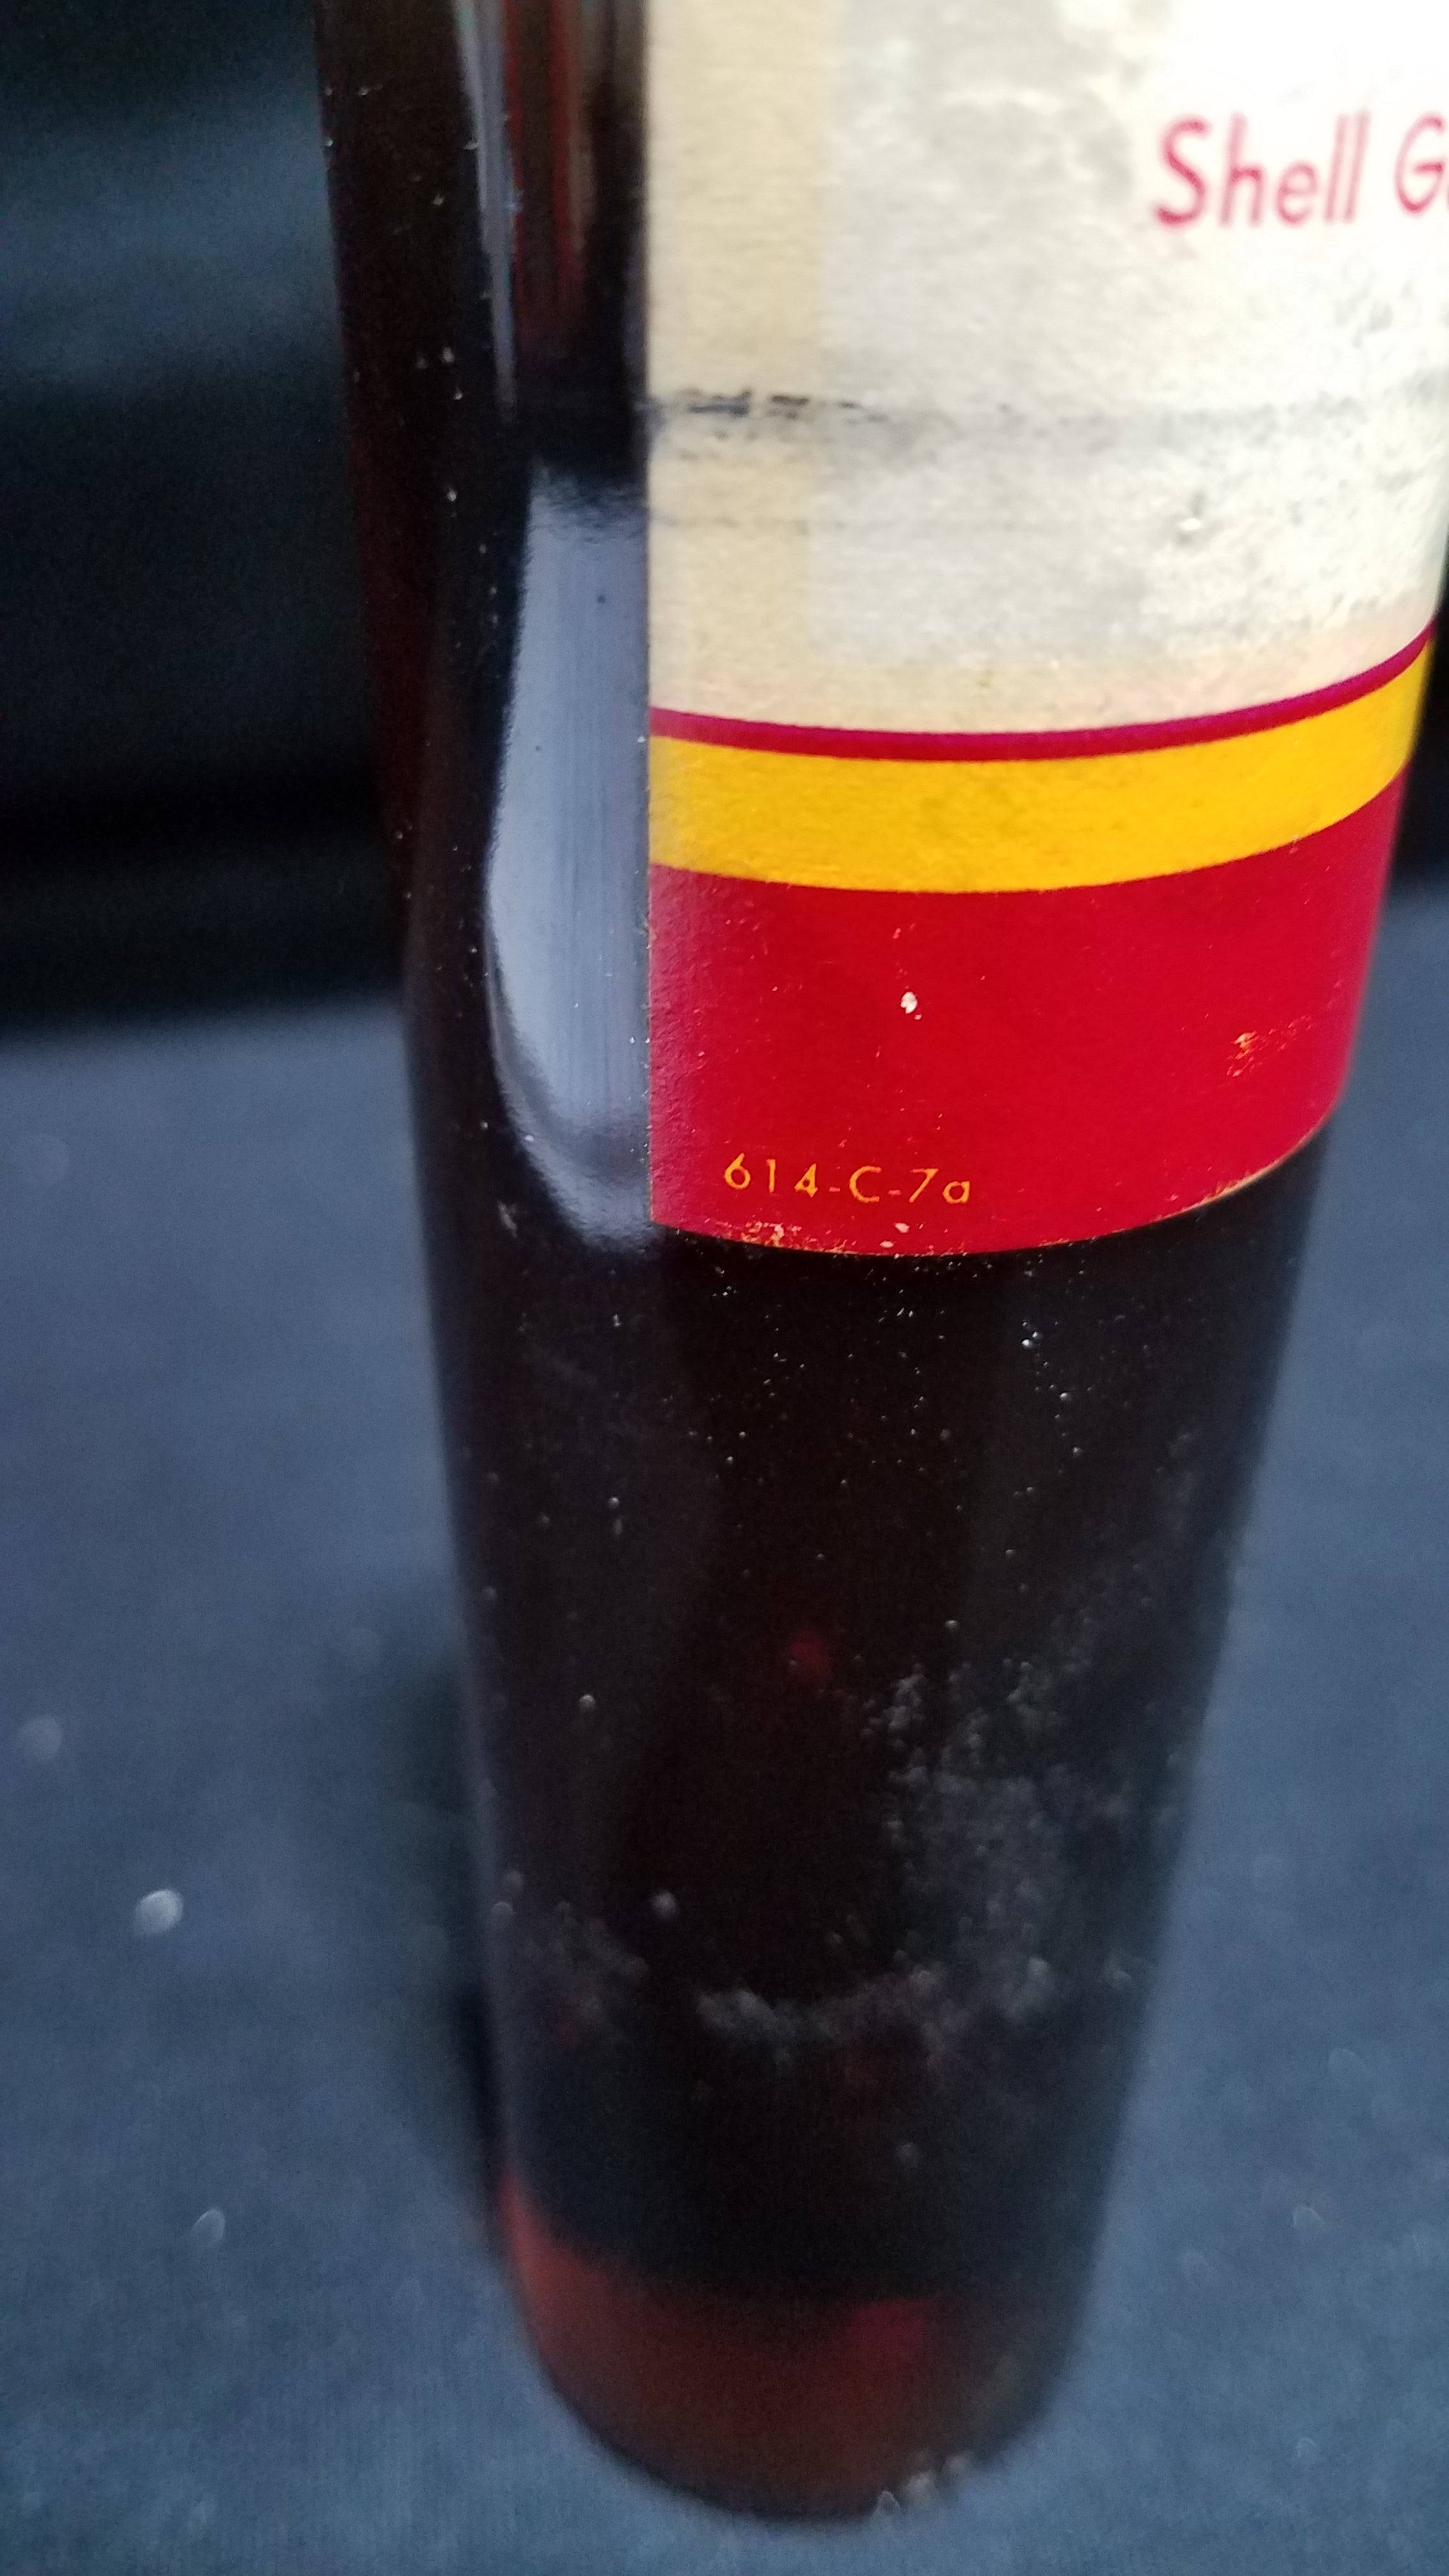 Shell Garia Oil 27 Glass Bottle Sample